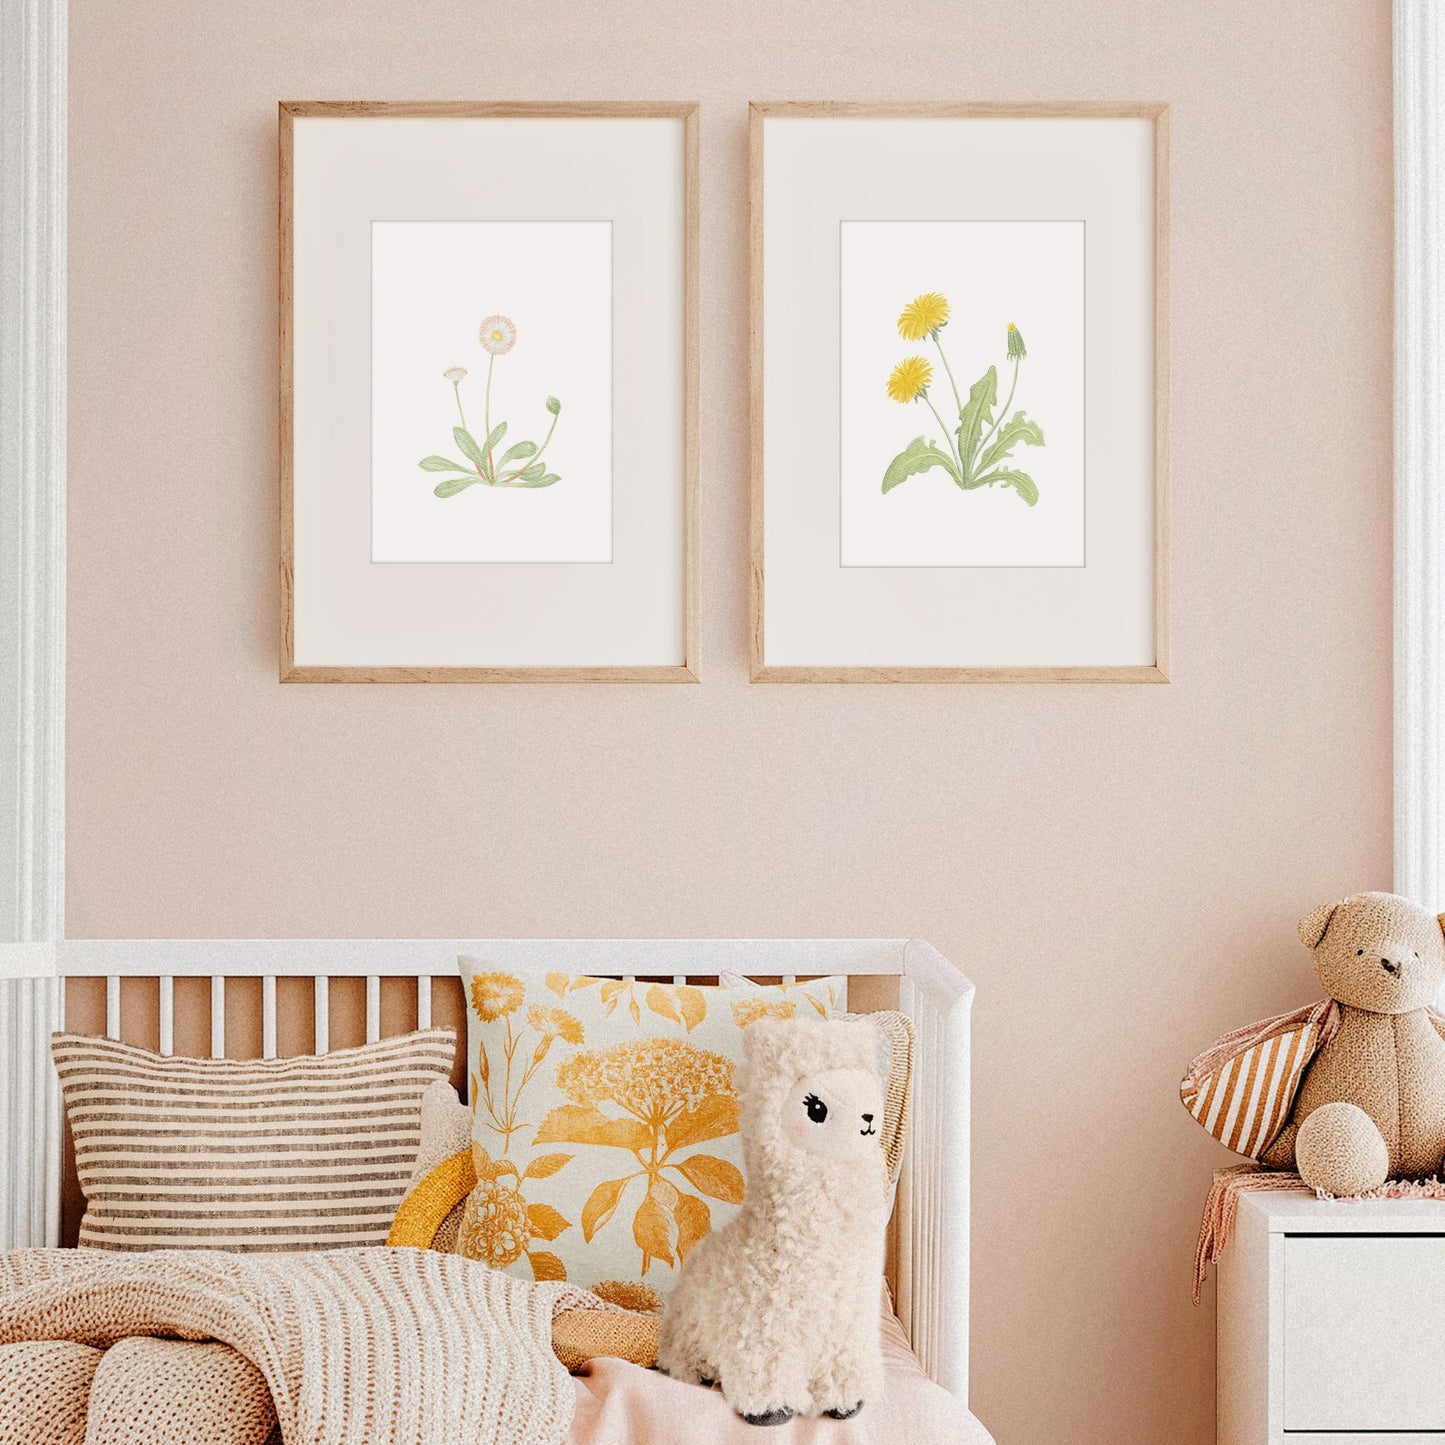 Poster 'Gänseblümchen' | Kinderzimmer Deko | DIN A4 oder A5 Poster Kotenkram DIN A4 (210 x 297 mm)